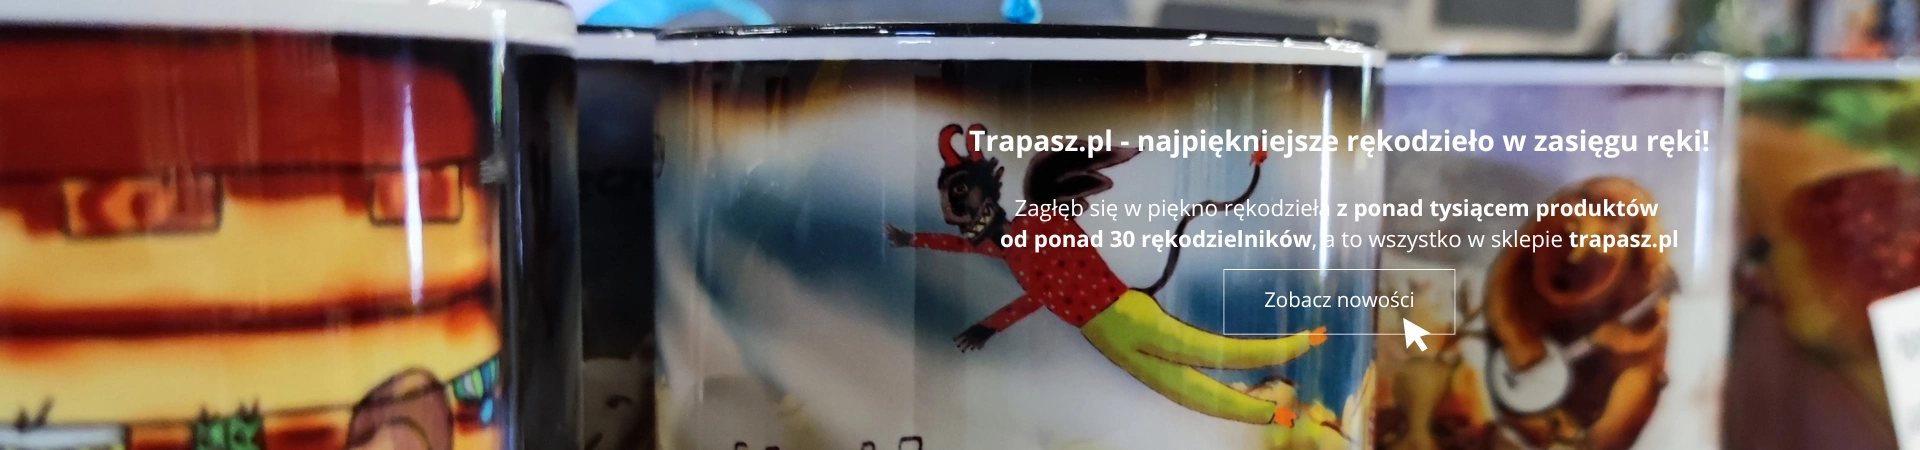 Trapasz.pl